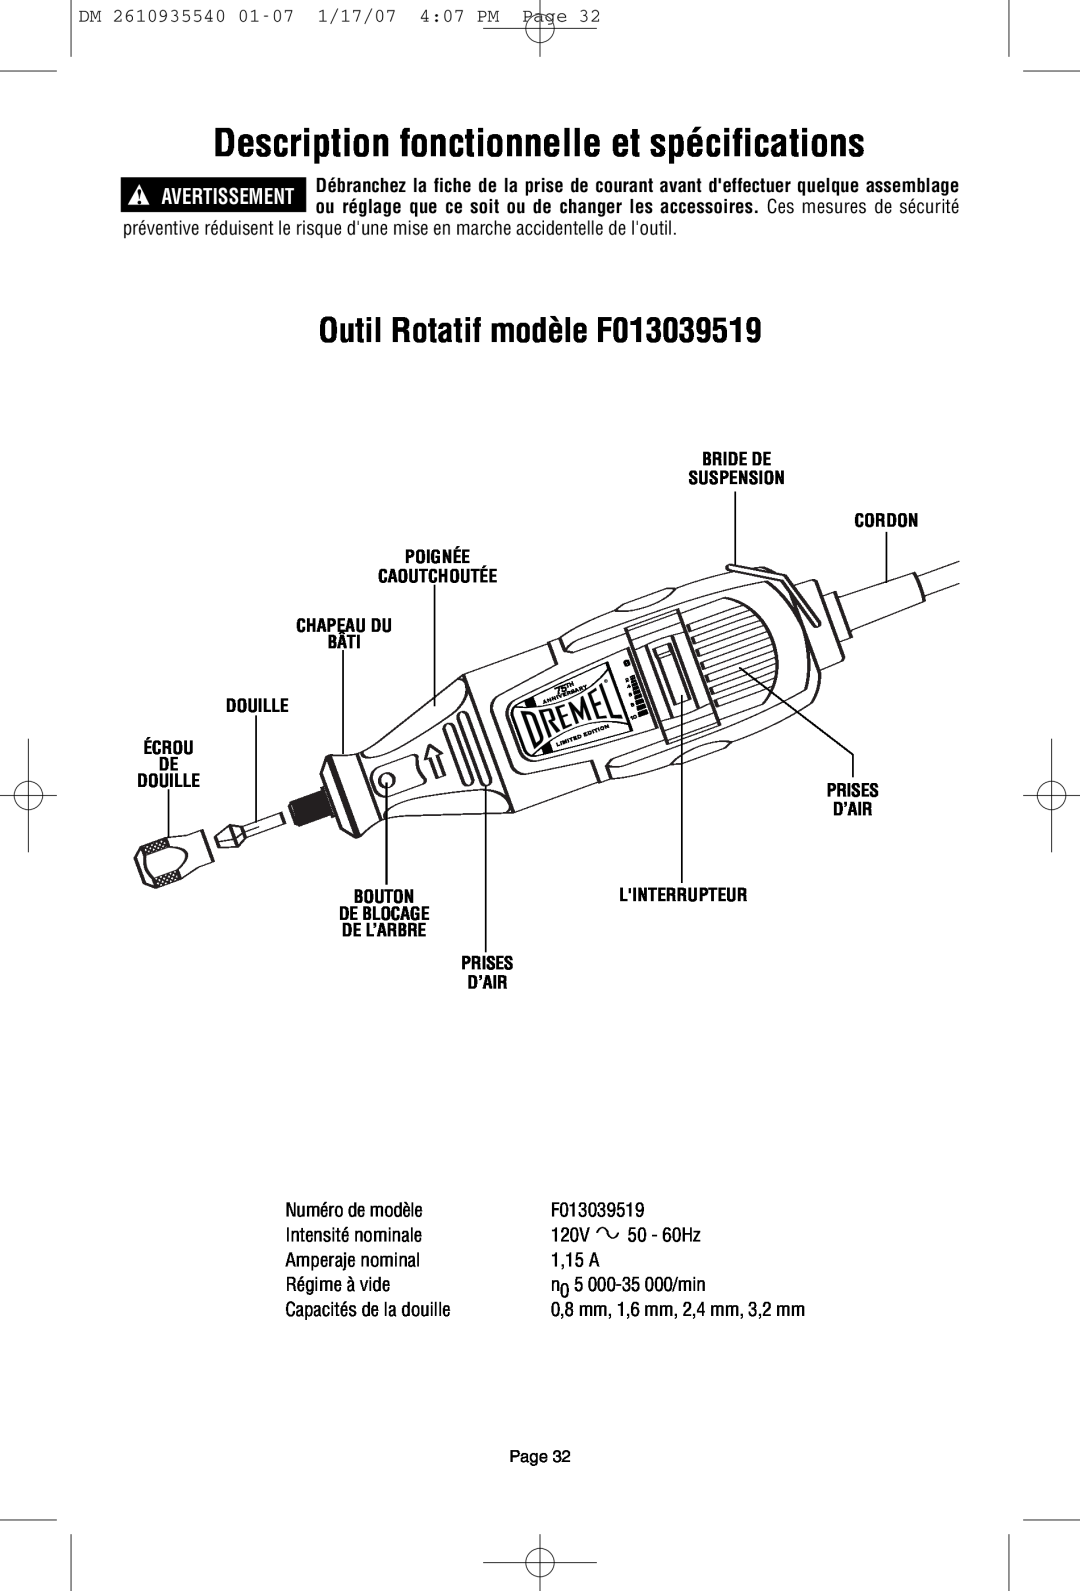 Dremel owner manual Description fonctionnelle et spécifications, Outil Rotatif modèle F013039519 